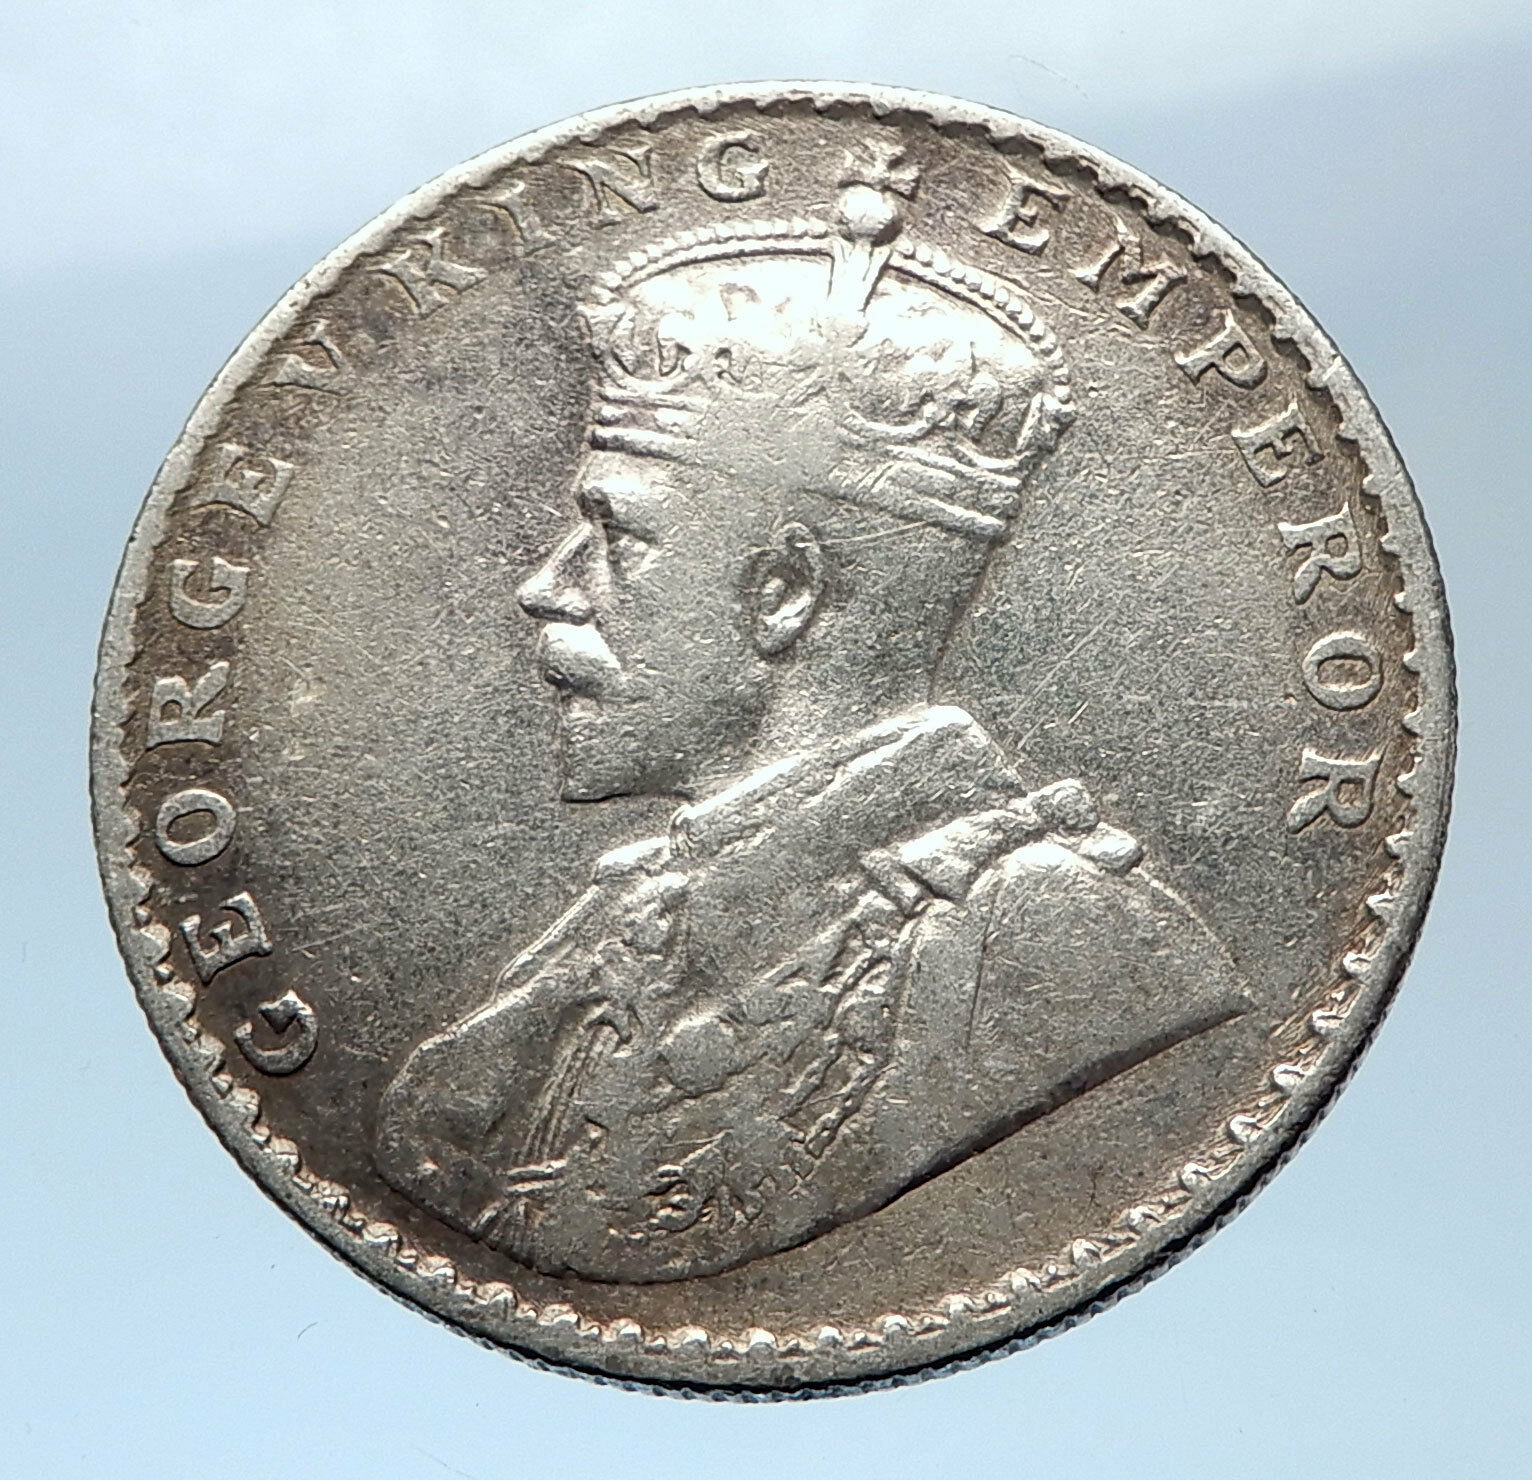 1912 INDIA UK King George V Silver Antique RUPEE Vintage Indian Coin i73952